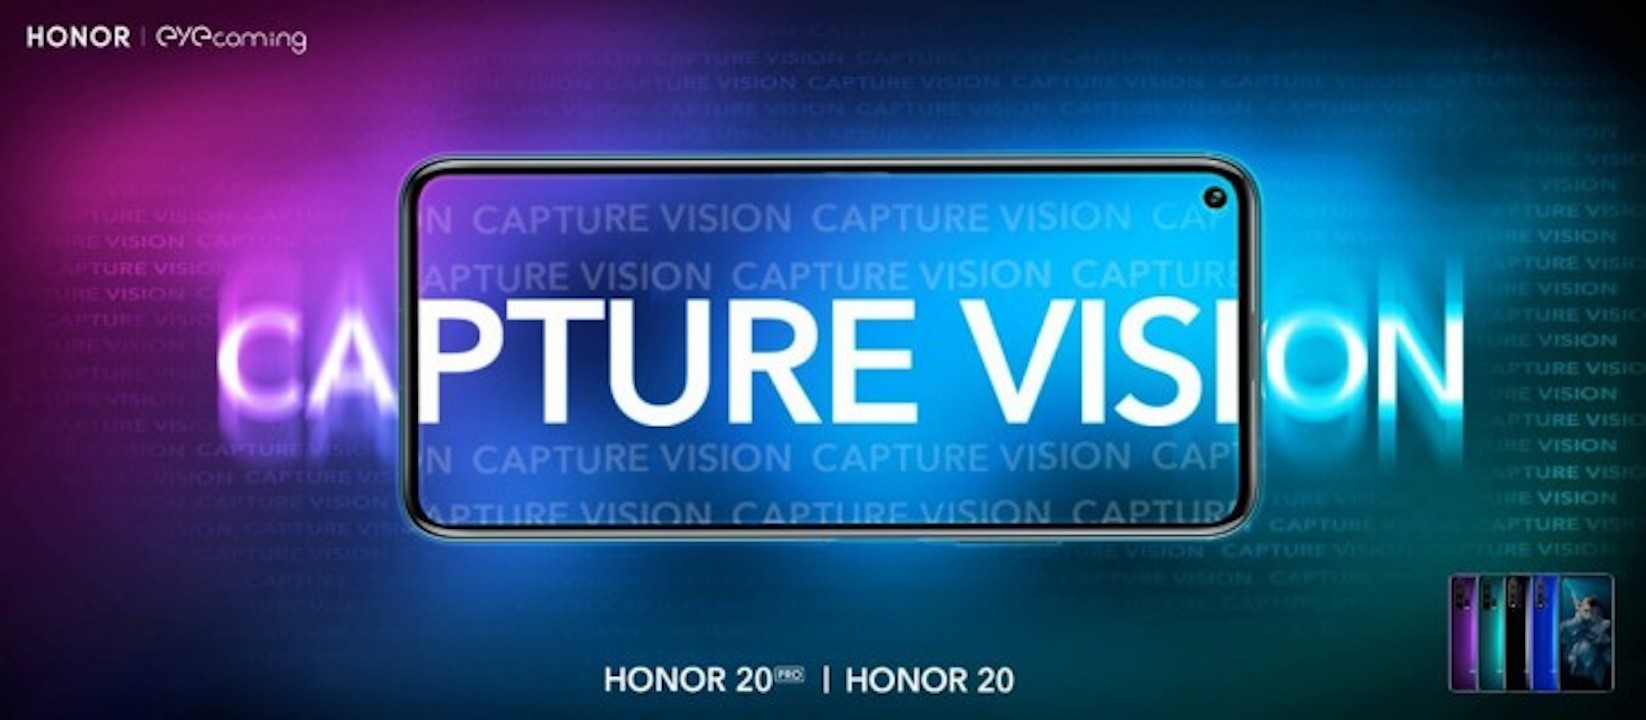 يحتوي تطبيق PocketVision من Honor على أدوات لضعاف البصر